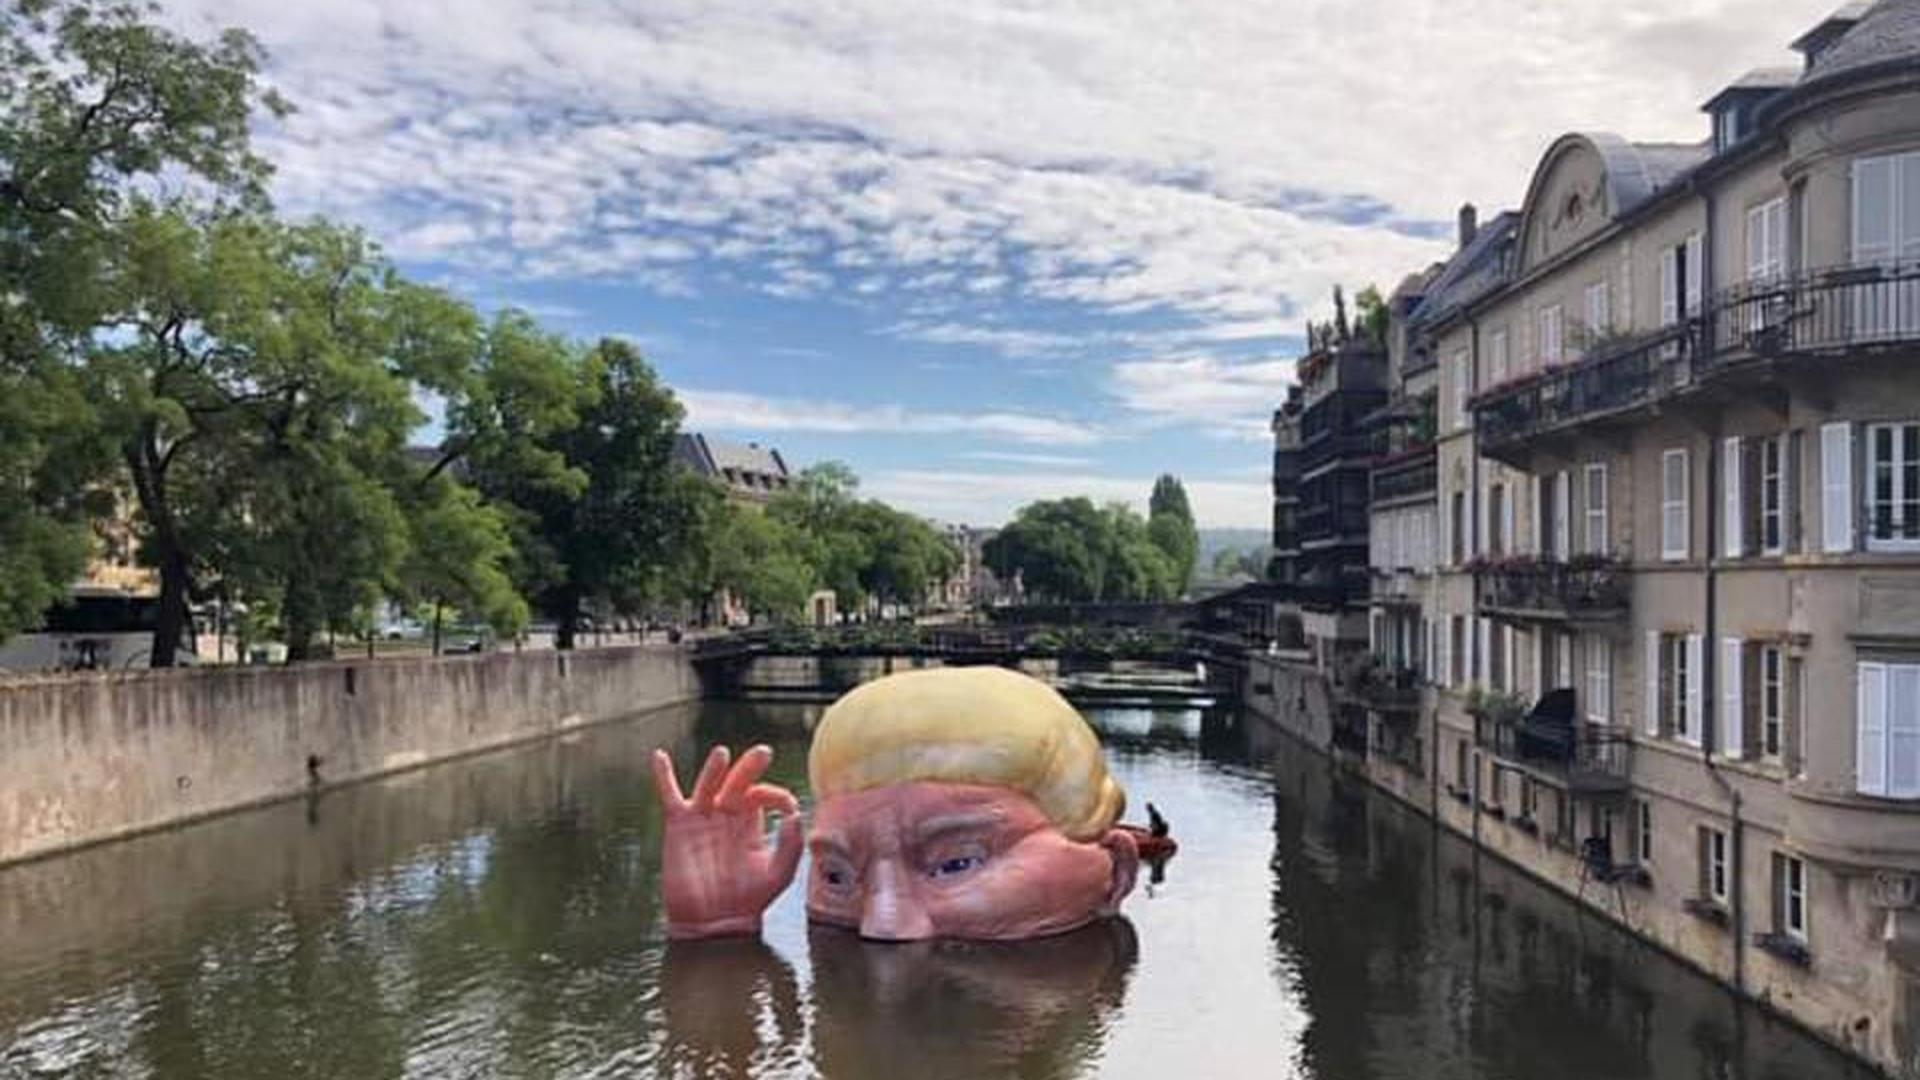 Jacques Rival, le père de l’effigie gonflable de Donald Trump, cherche à faire voyager son œuvre.